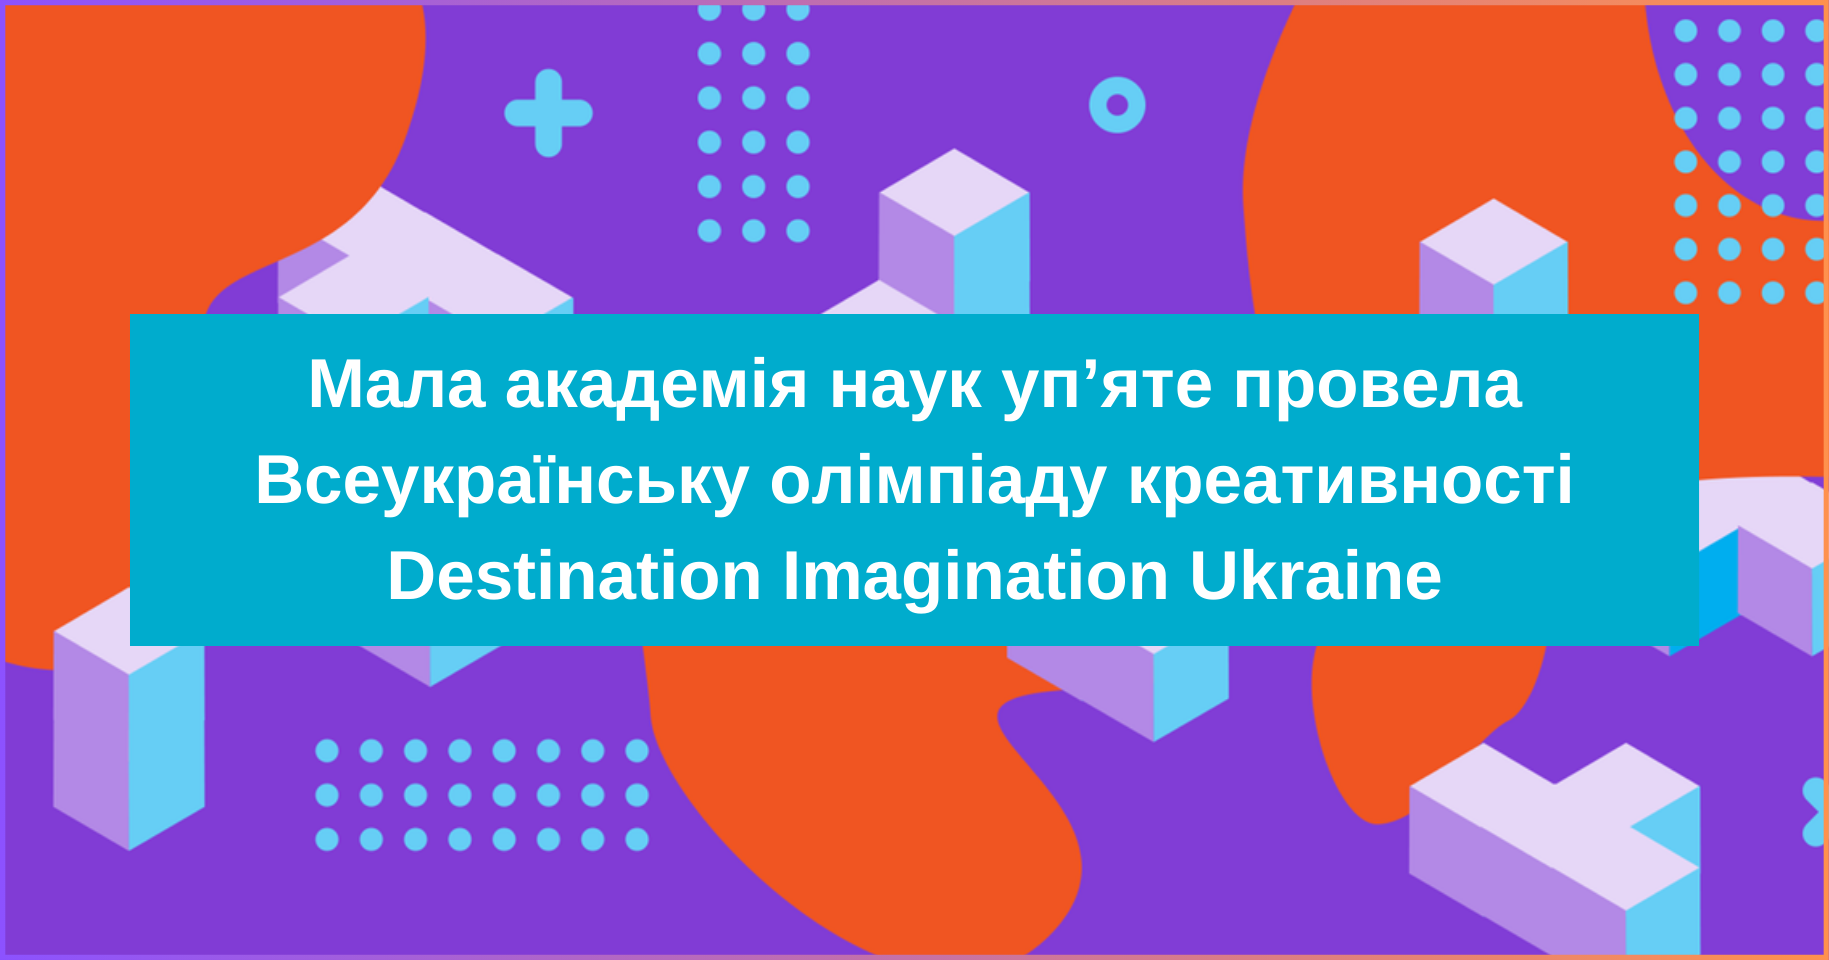 Мала академія наук уп’яте провела Всеукраїнську олімпіаду креативності Destination Imagination Ukraine